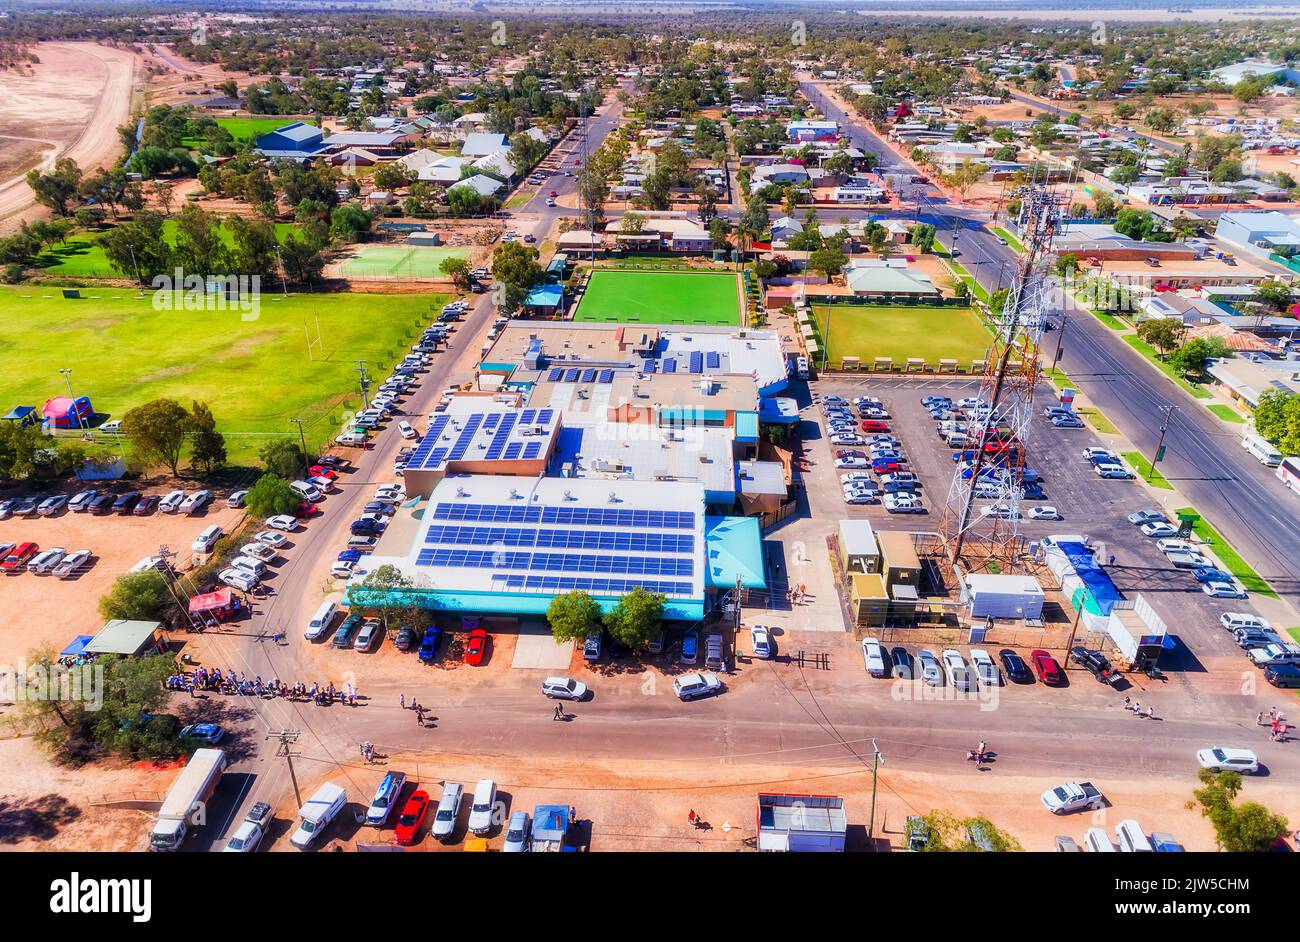 Downtown of Lightning Ridge abgelegene ländliche Stadt im Outback Australien - Opalminen und Geschäfte. Stockfoto